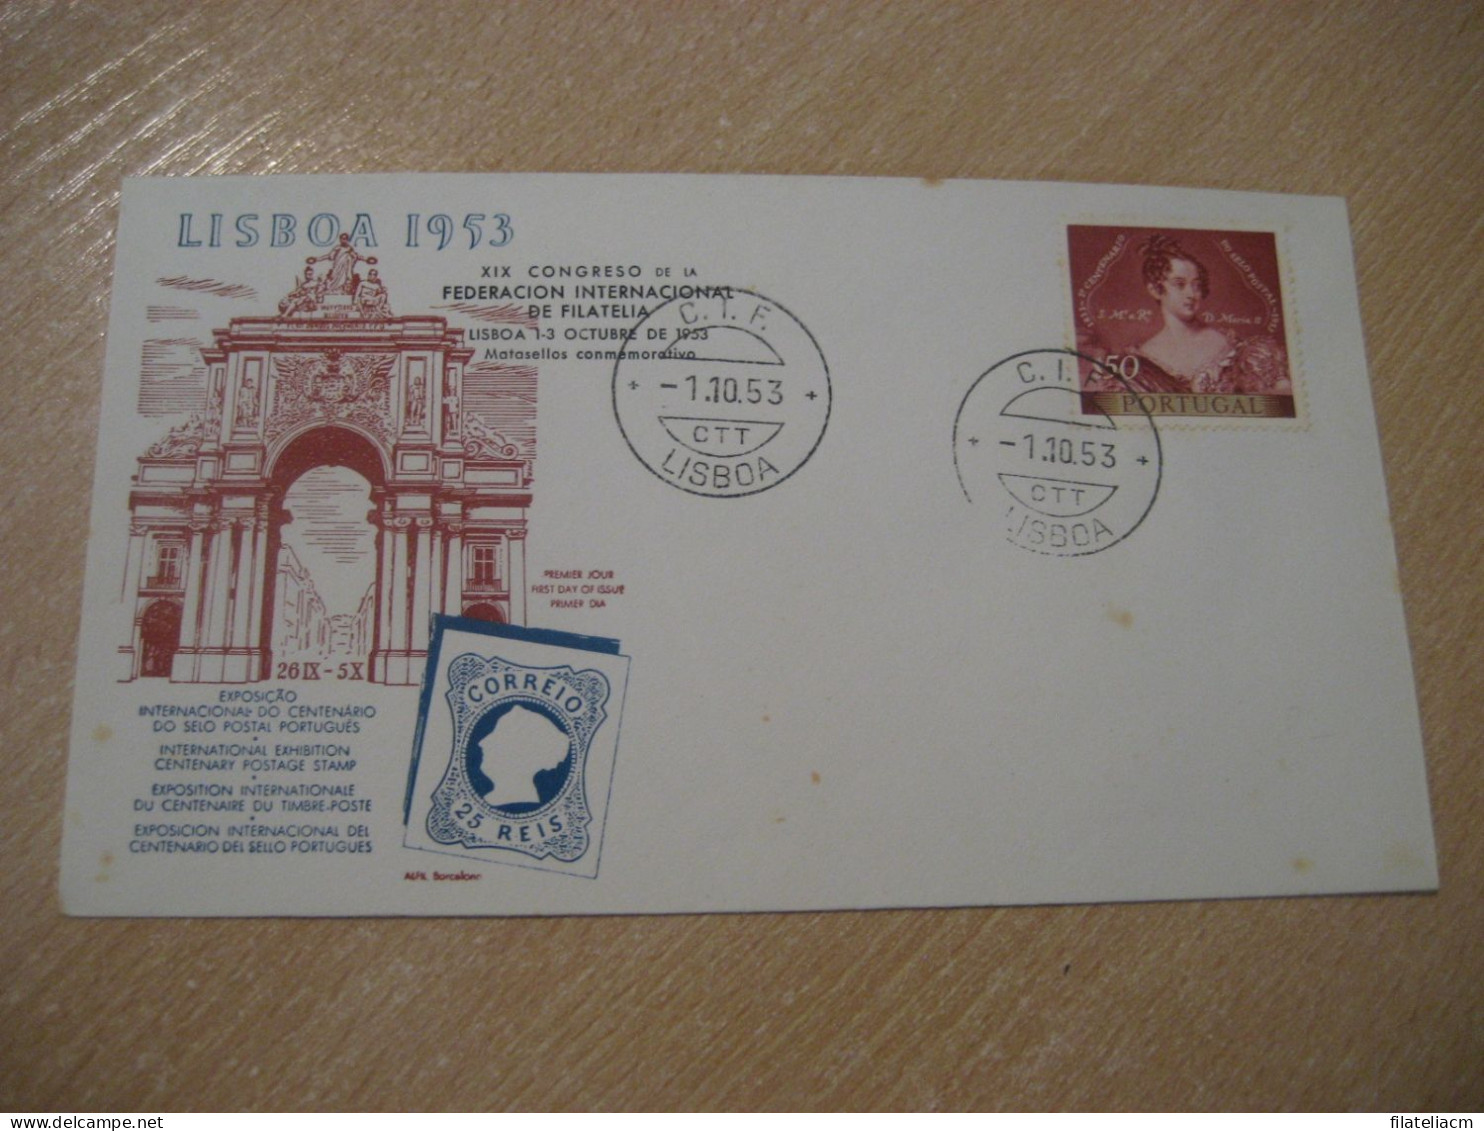 LISBOA 1953 C.I.F. CIF Expo Filatelica Int. Centenary Postage Stamp Cancel Cover PORTUGAL - Cartas & Documentos